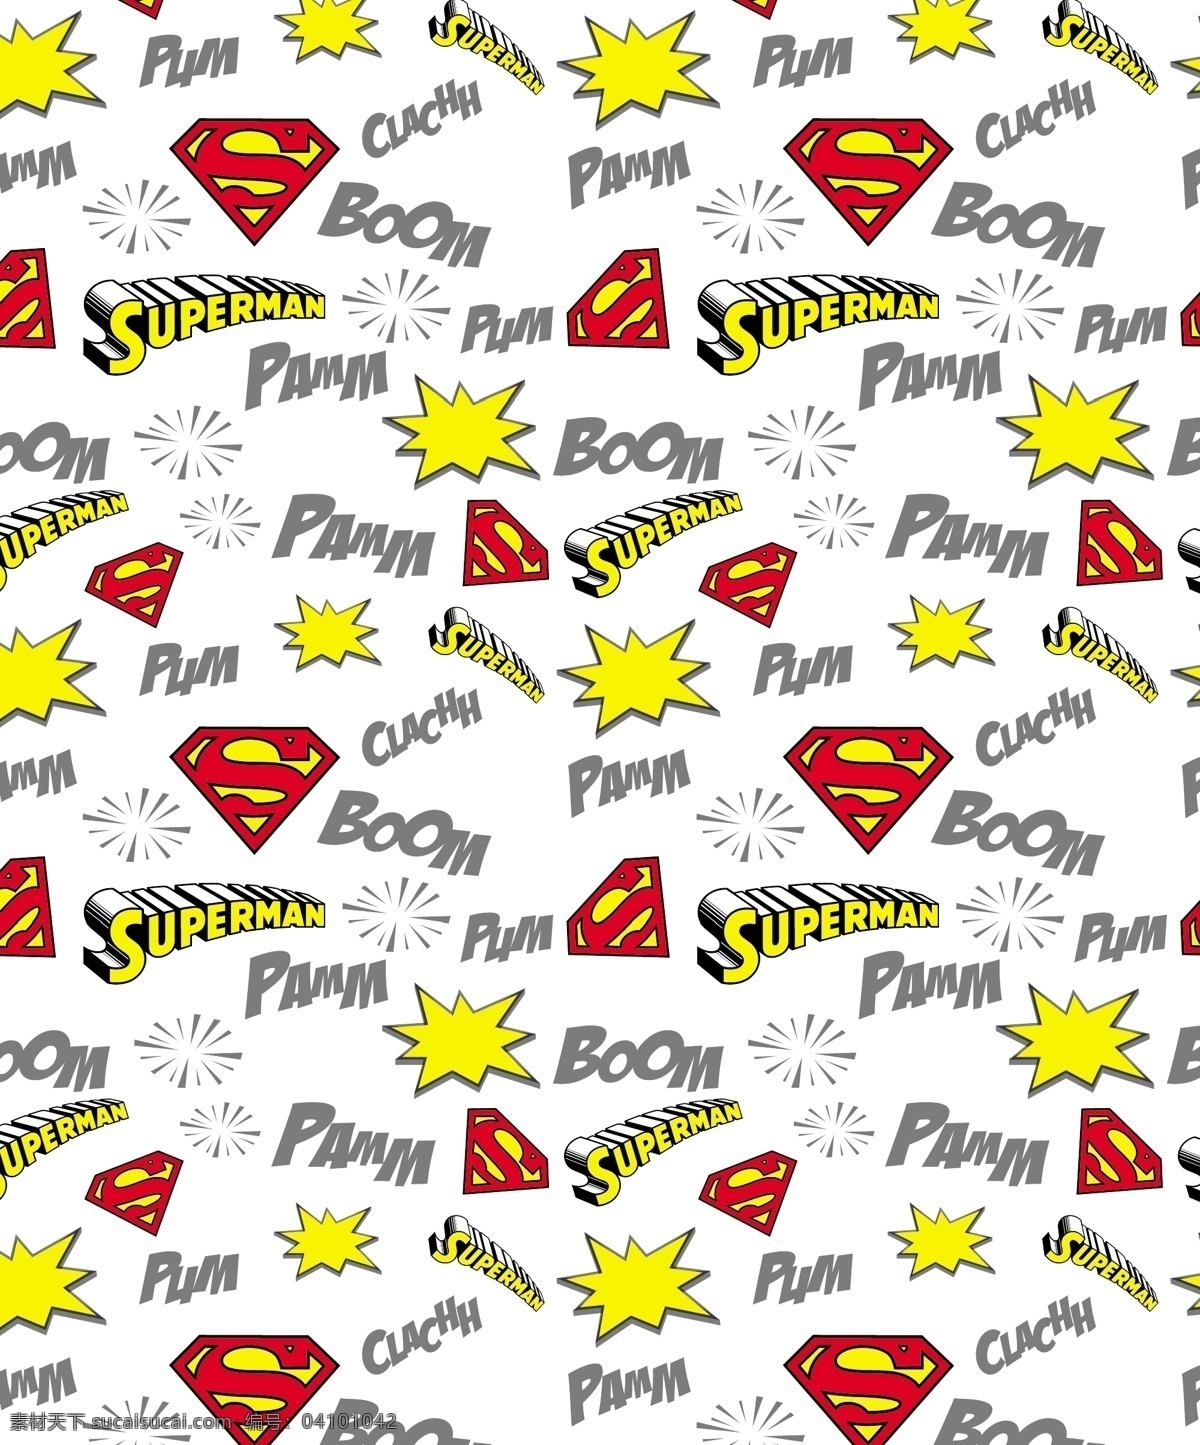 服装印花 标志 超人 superman 蝙蝠侠 batman 闪电侠 flash 华纳 dc漫画 超级英雄 英雄联盟 卡通形象 其他人物 矢量人物 矢量 其他设计